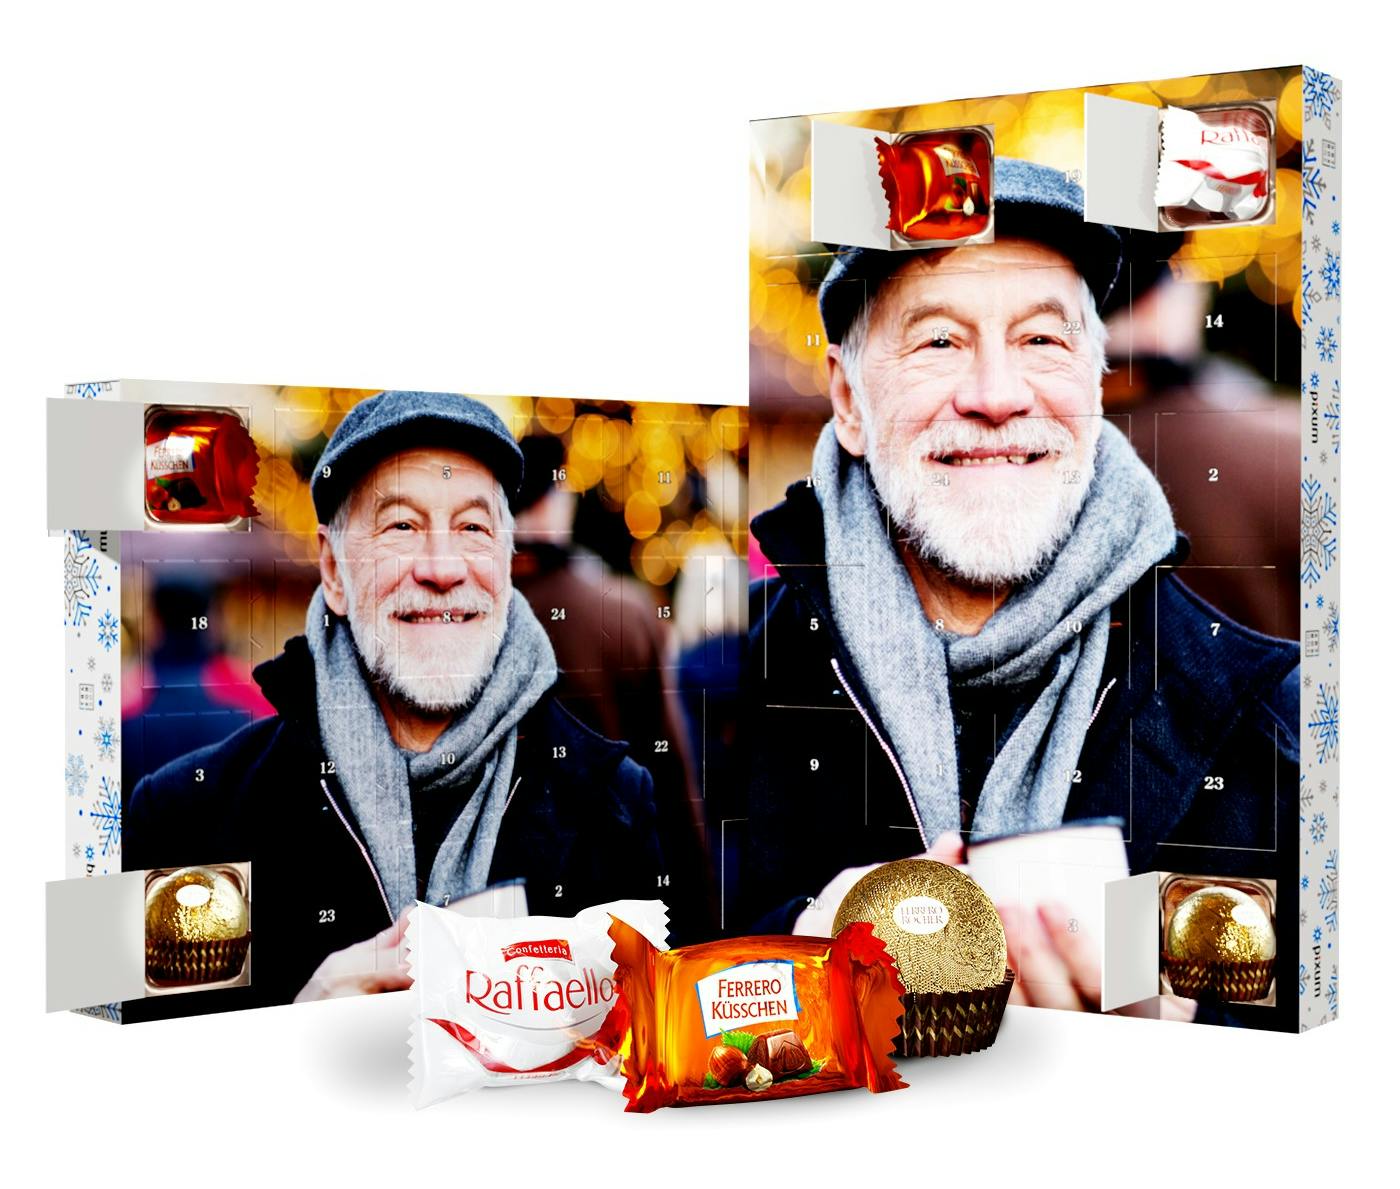 Calendario dell'Avvento personalizzato con cioccolatini Ferrero e foto di un uomo che ride